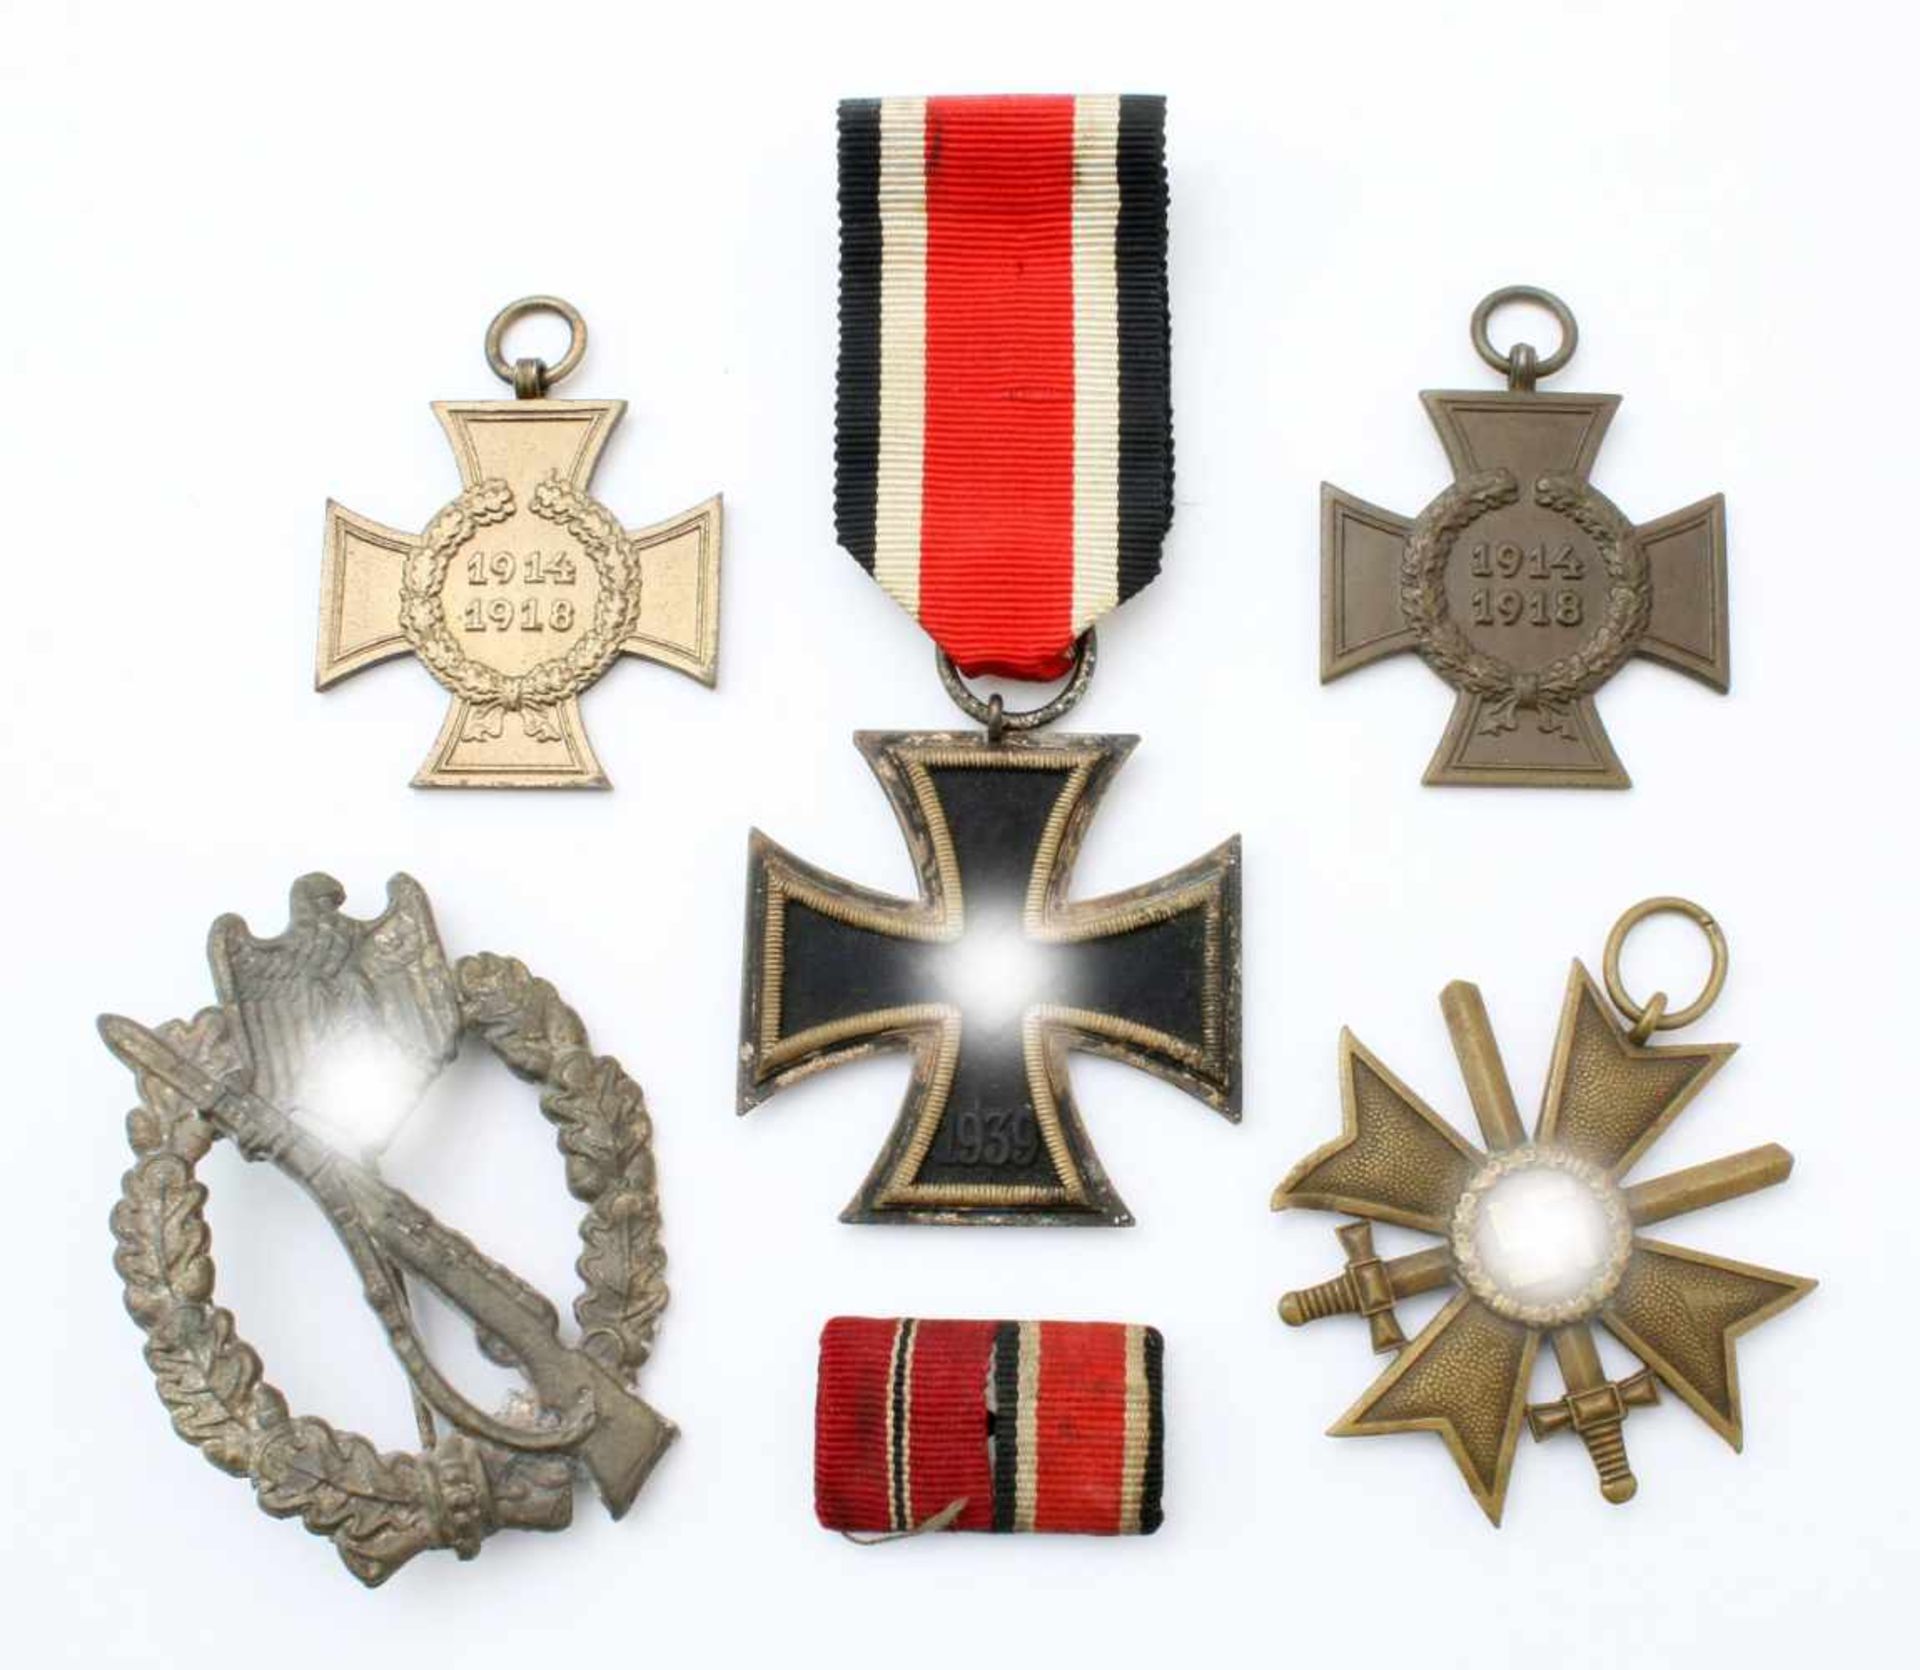 3. Reich - Auszeichnungen EK 2. Kl. 1939, KVK 2. Kl. mit Schwertern u.a. EK 2. Kl. 1939 am